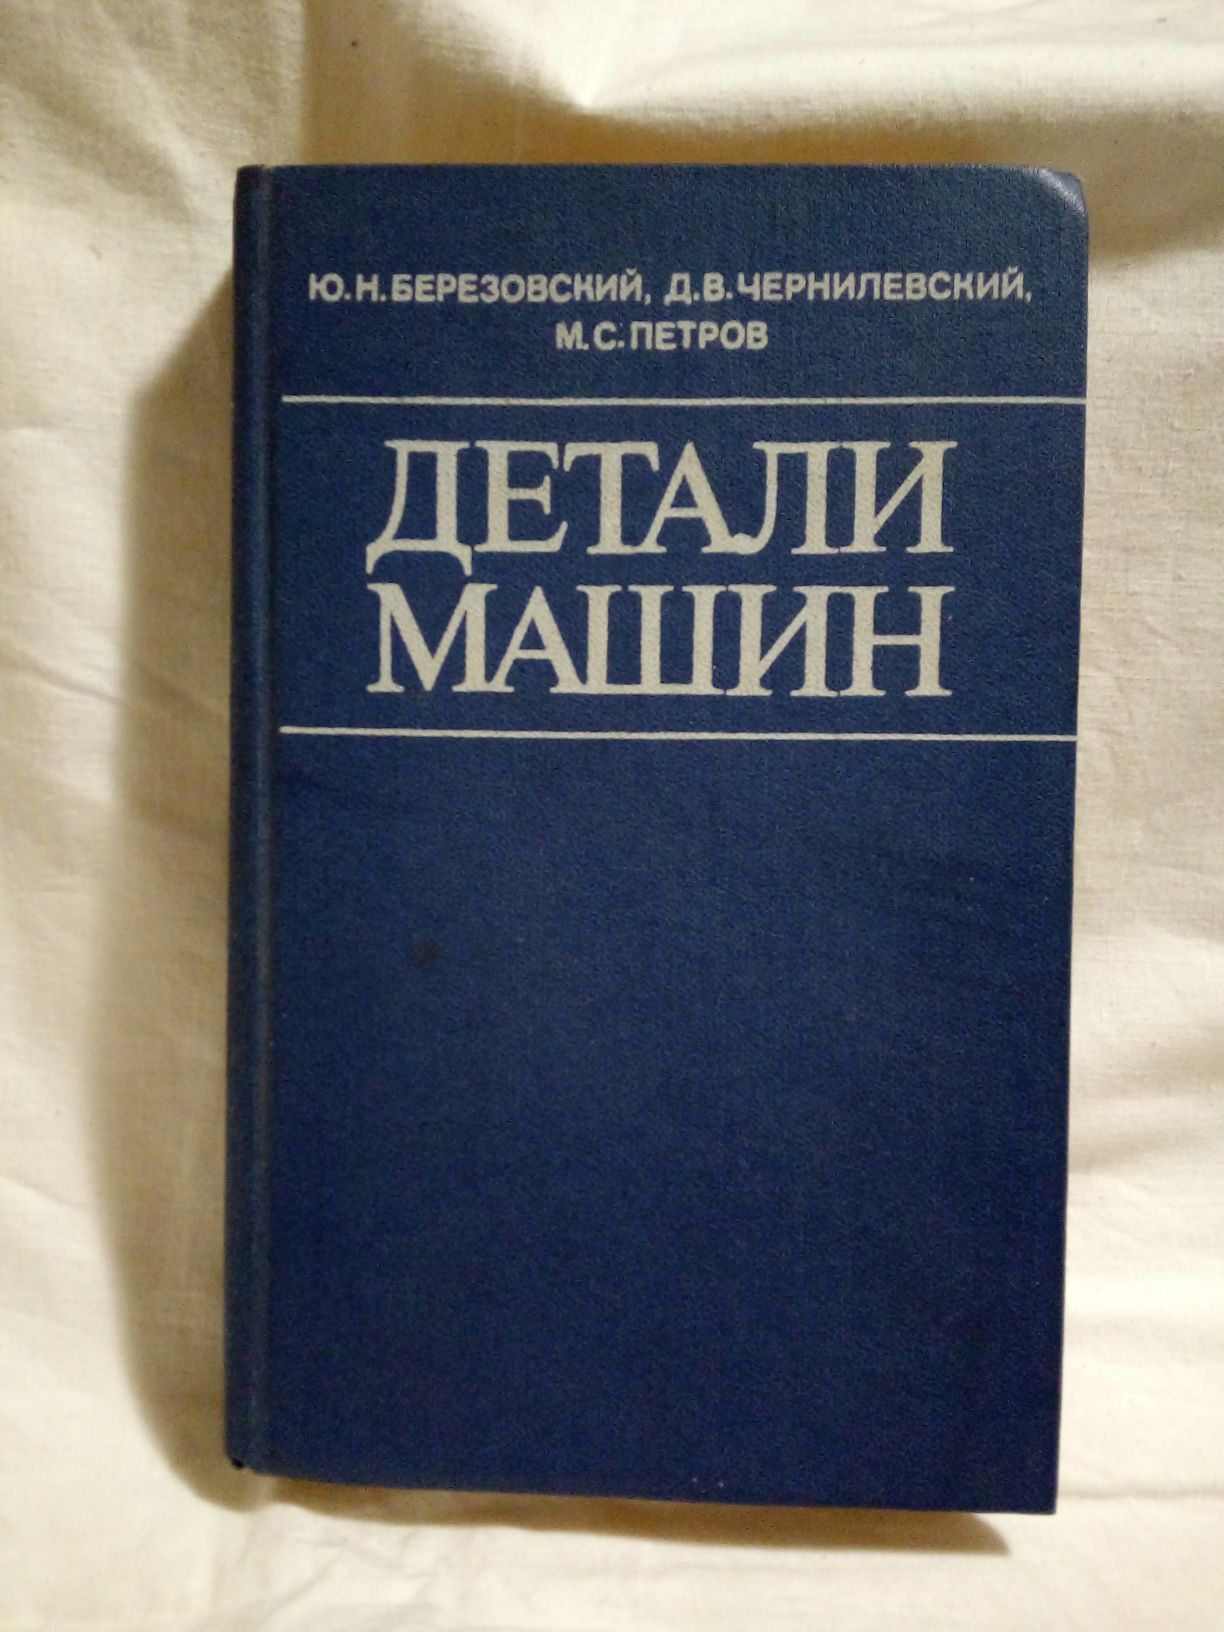 Книга Ю. Н. Березовский "Детали машин".